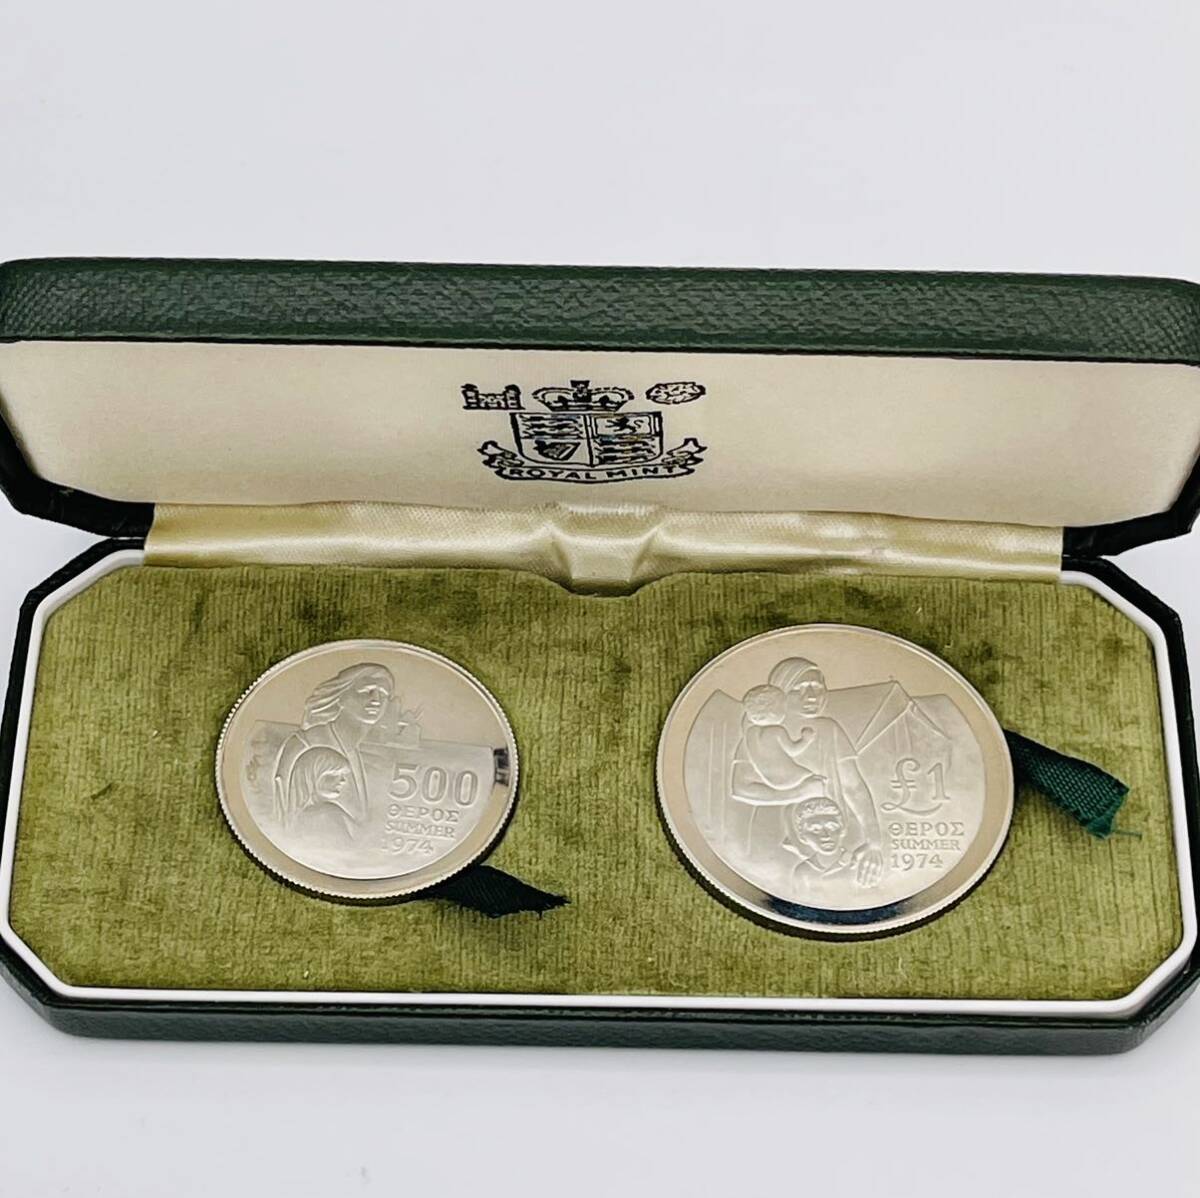 キプロス 1976年 1ポンド 500ミルス 銀貨 プルーフ シルバープルーフ 2枚セット の画像1